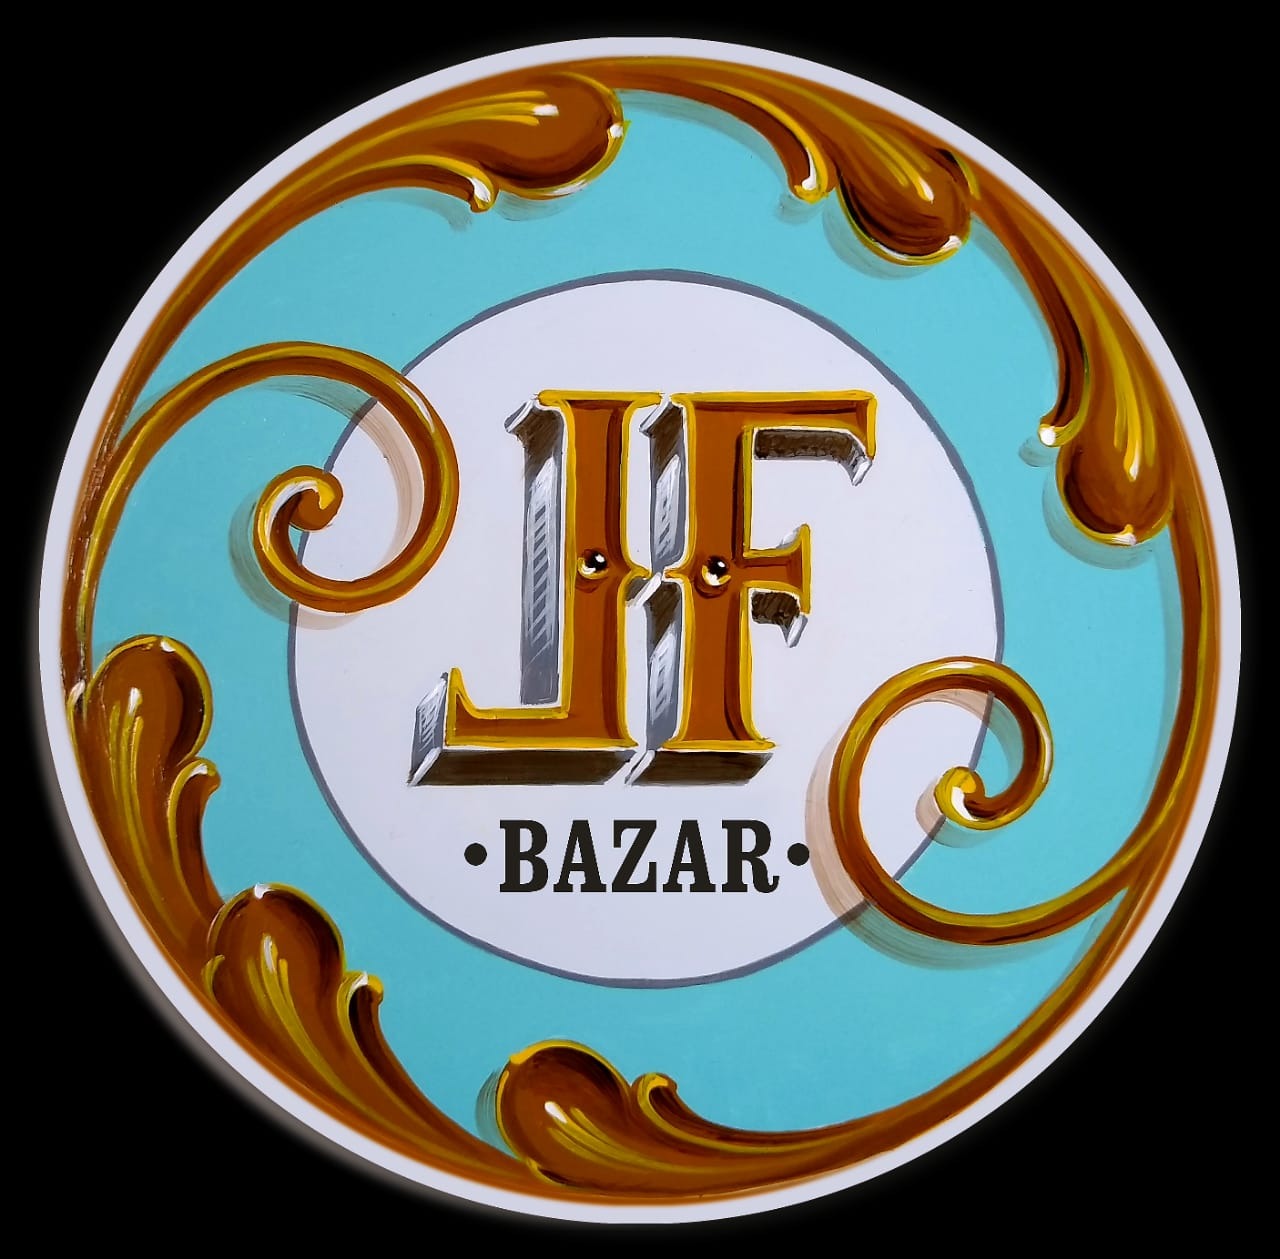 LF Bazar